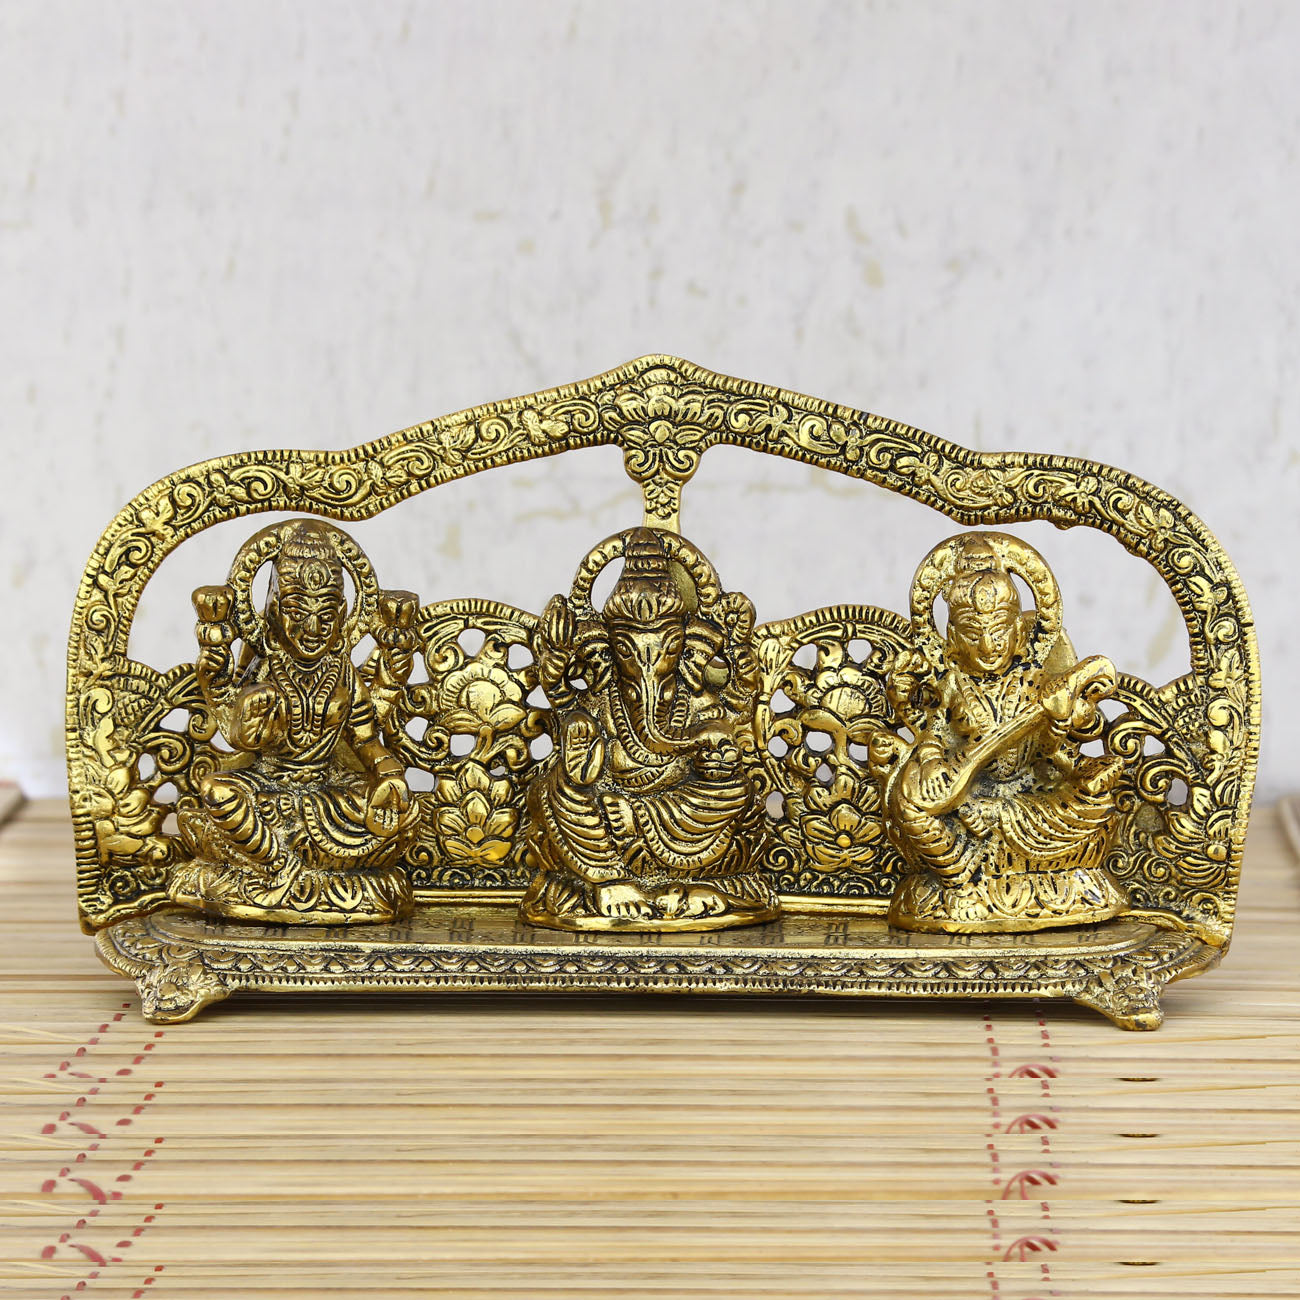 Golden Laxmi Ganesha Saraswati Murtis Religious Idols